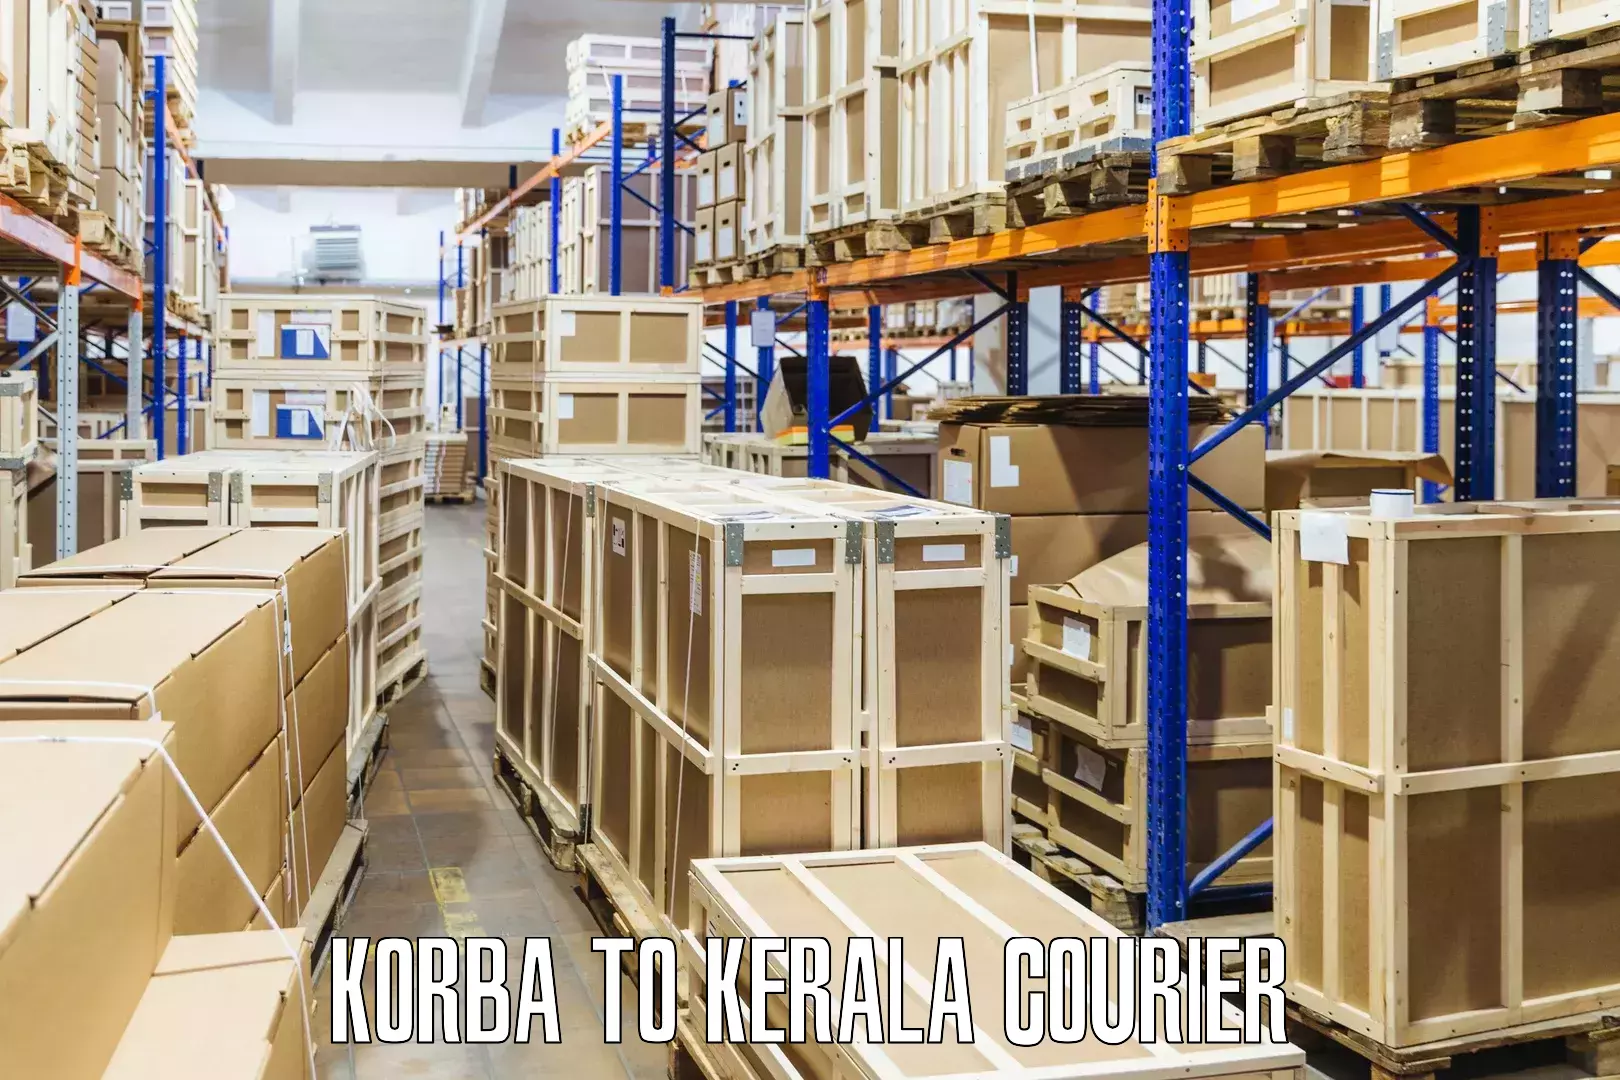 Lightweight courier Korba to Perumbavoor